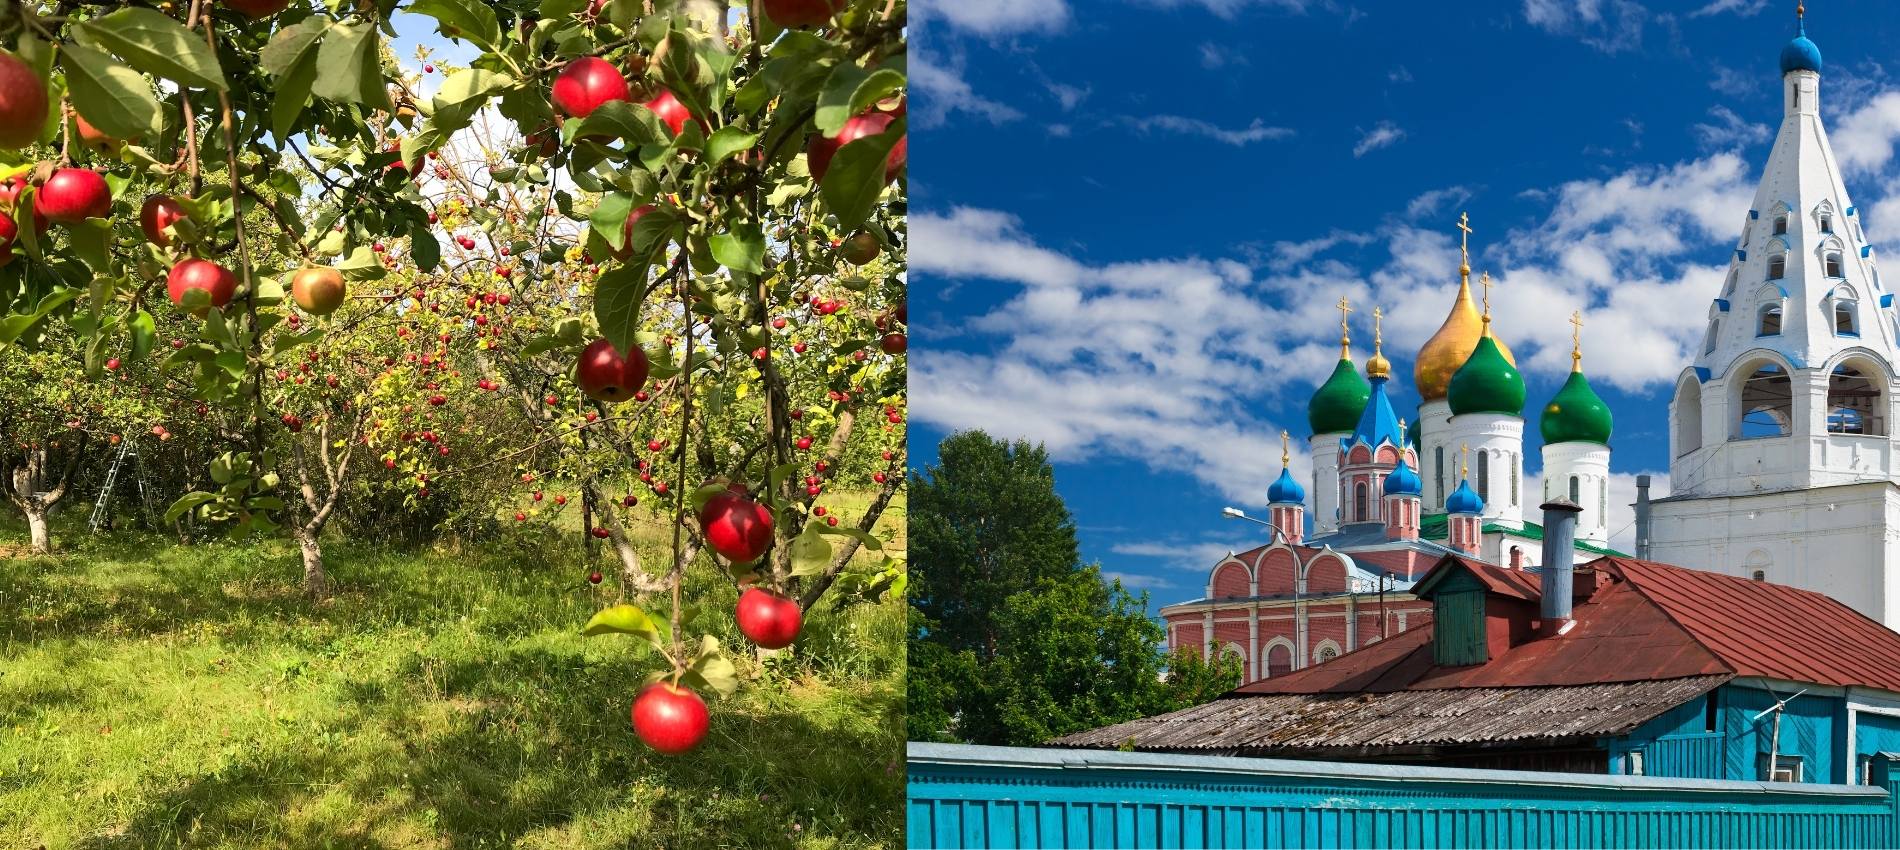 Apfelretter ukrainischer Feiertag zur Reife der Äpfel und Verklärung Jesu